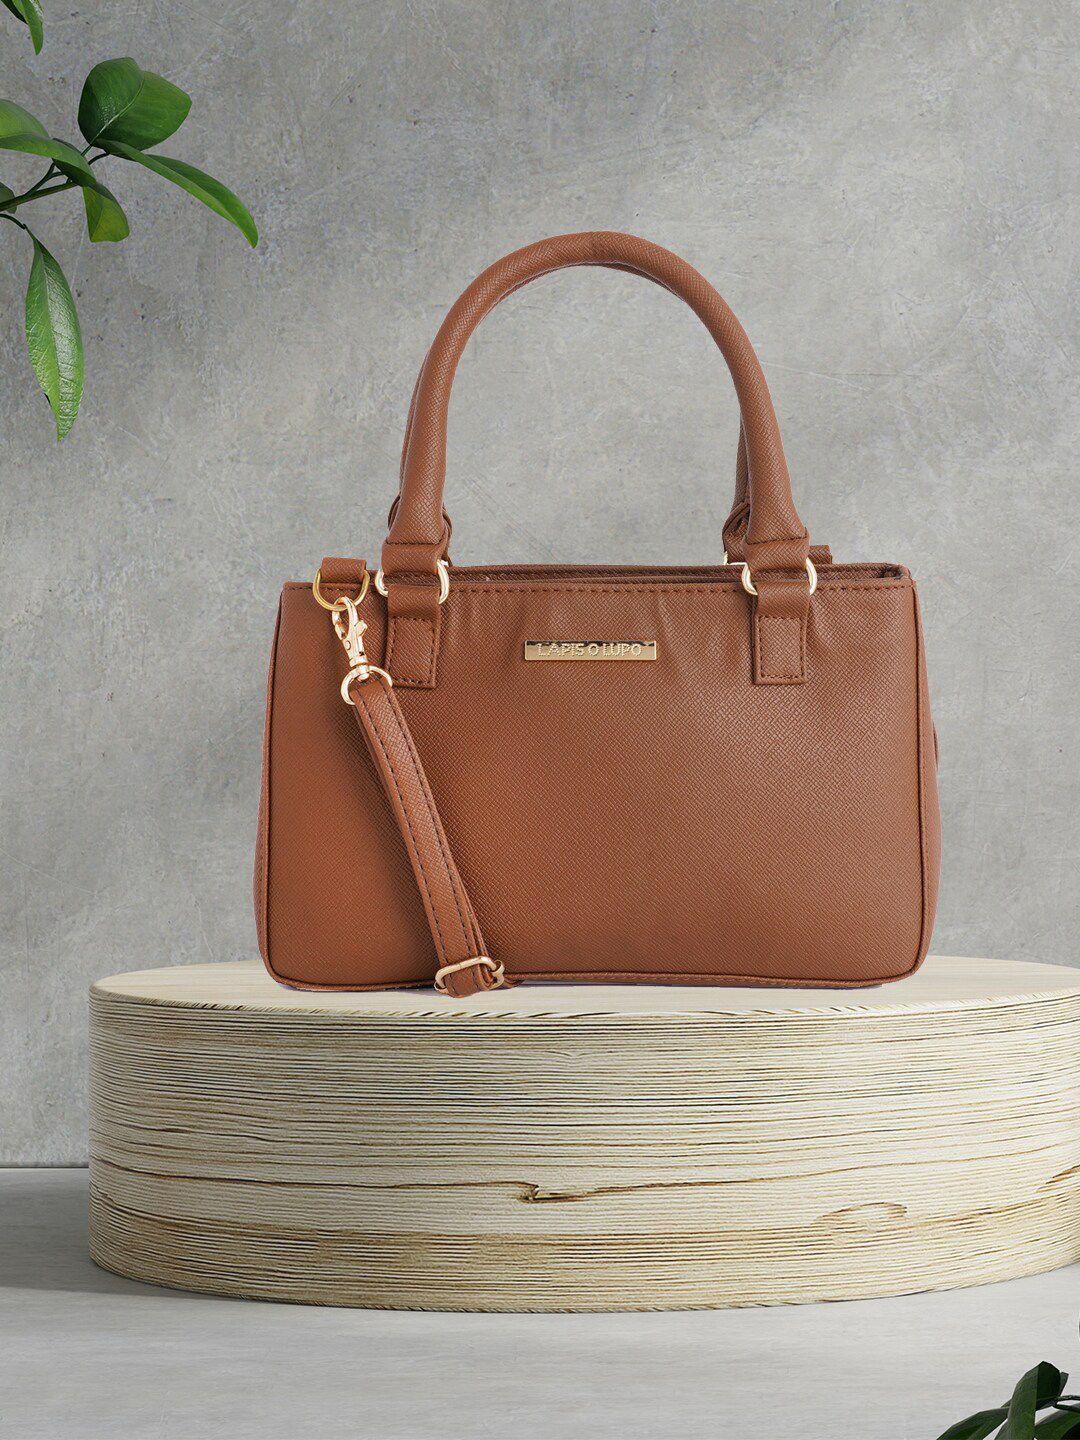 lapis o lupo brown structured handheld bag